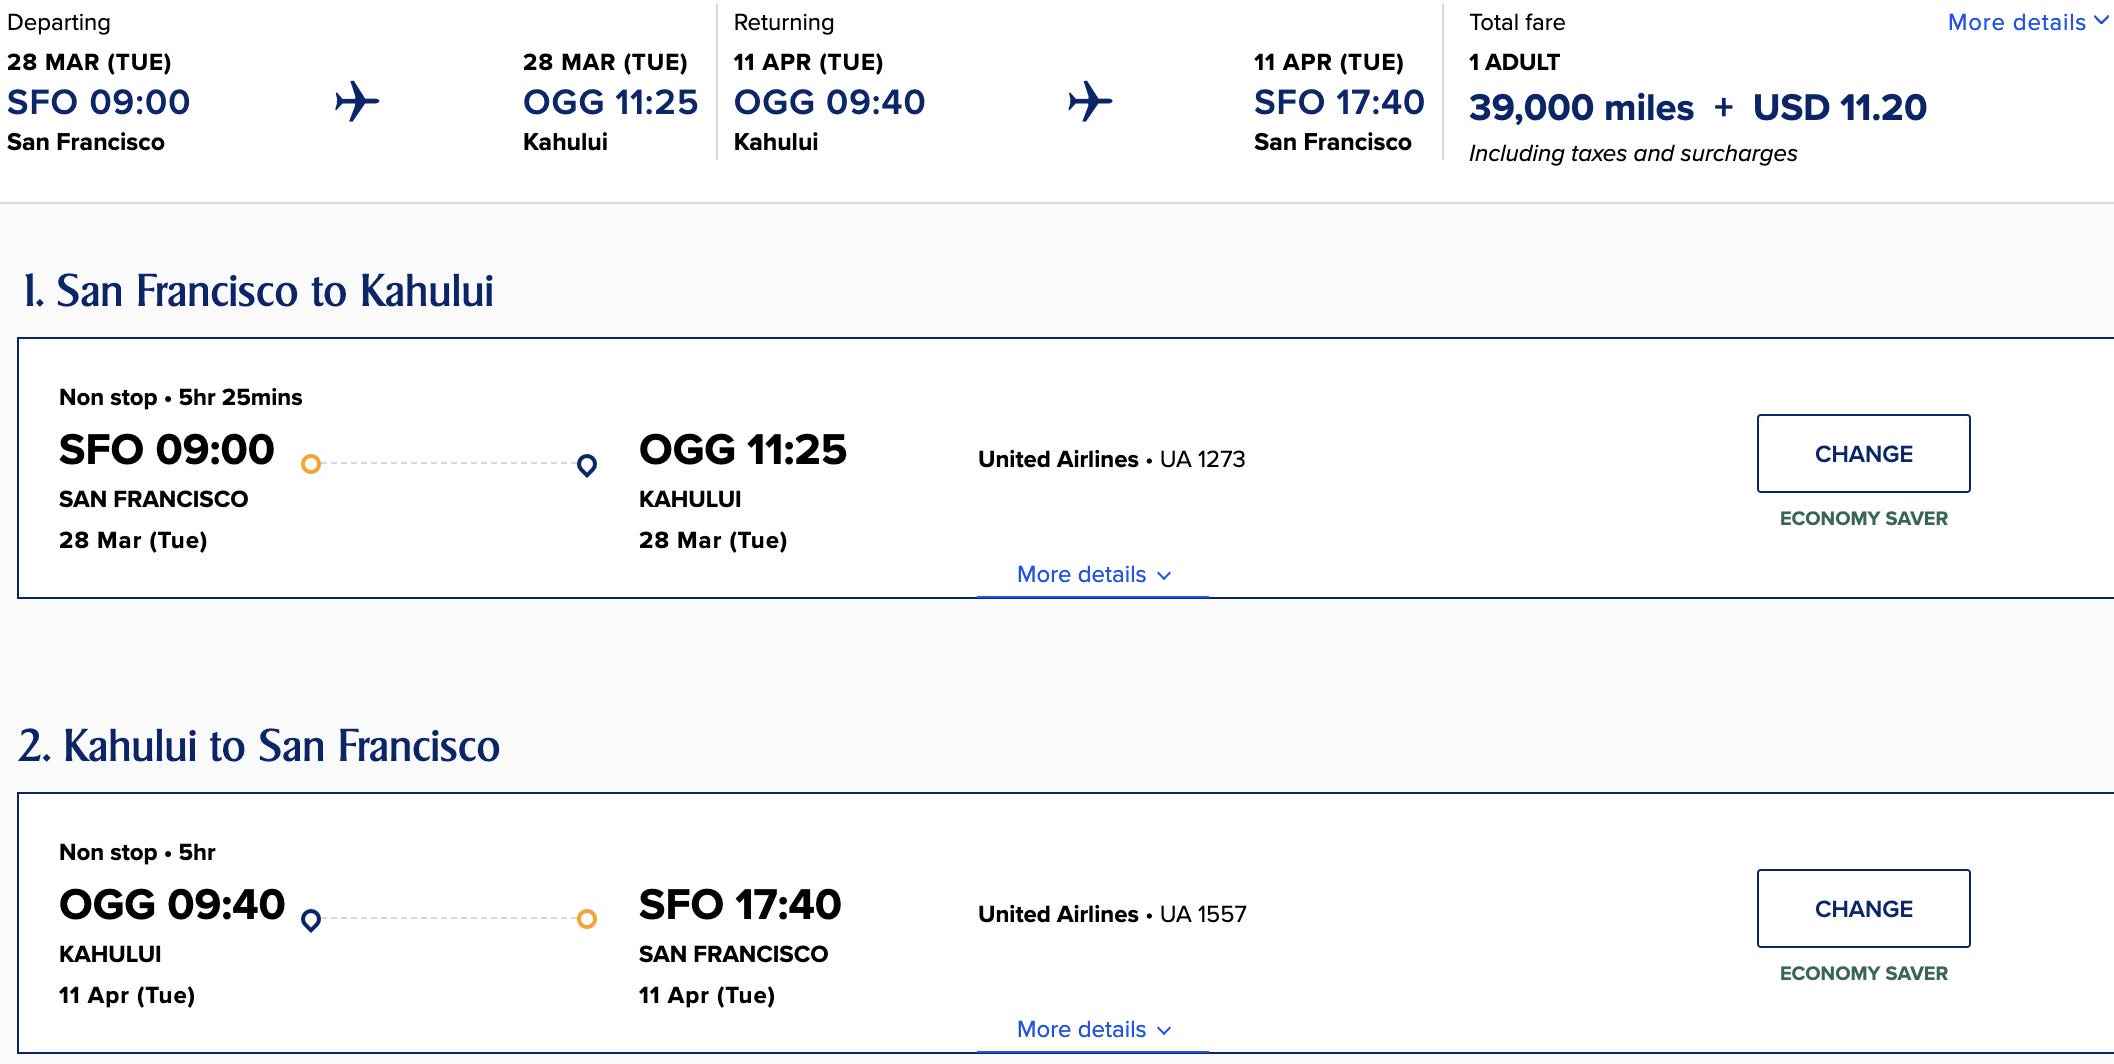 Prämienkosten für Hin- und Rückflug für einen Flug zwischen San Francisco und Honolulu mit United Airlines-Meilen